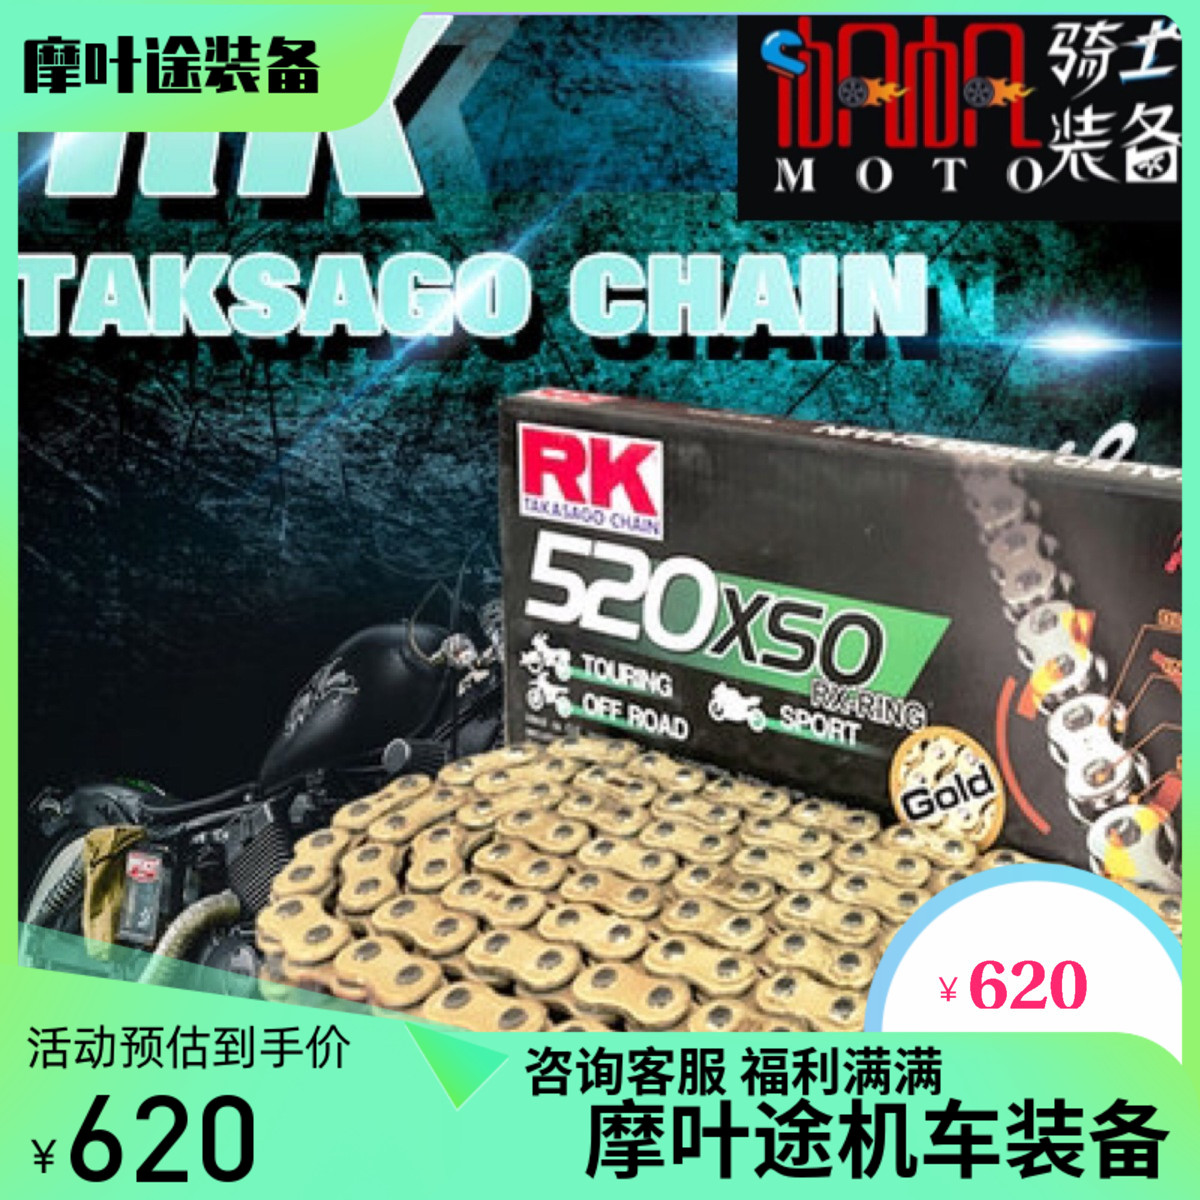 日本RK 摩托车链条 卡扣 GXW XSO 520/525/530 彩色 加厚油封链条